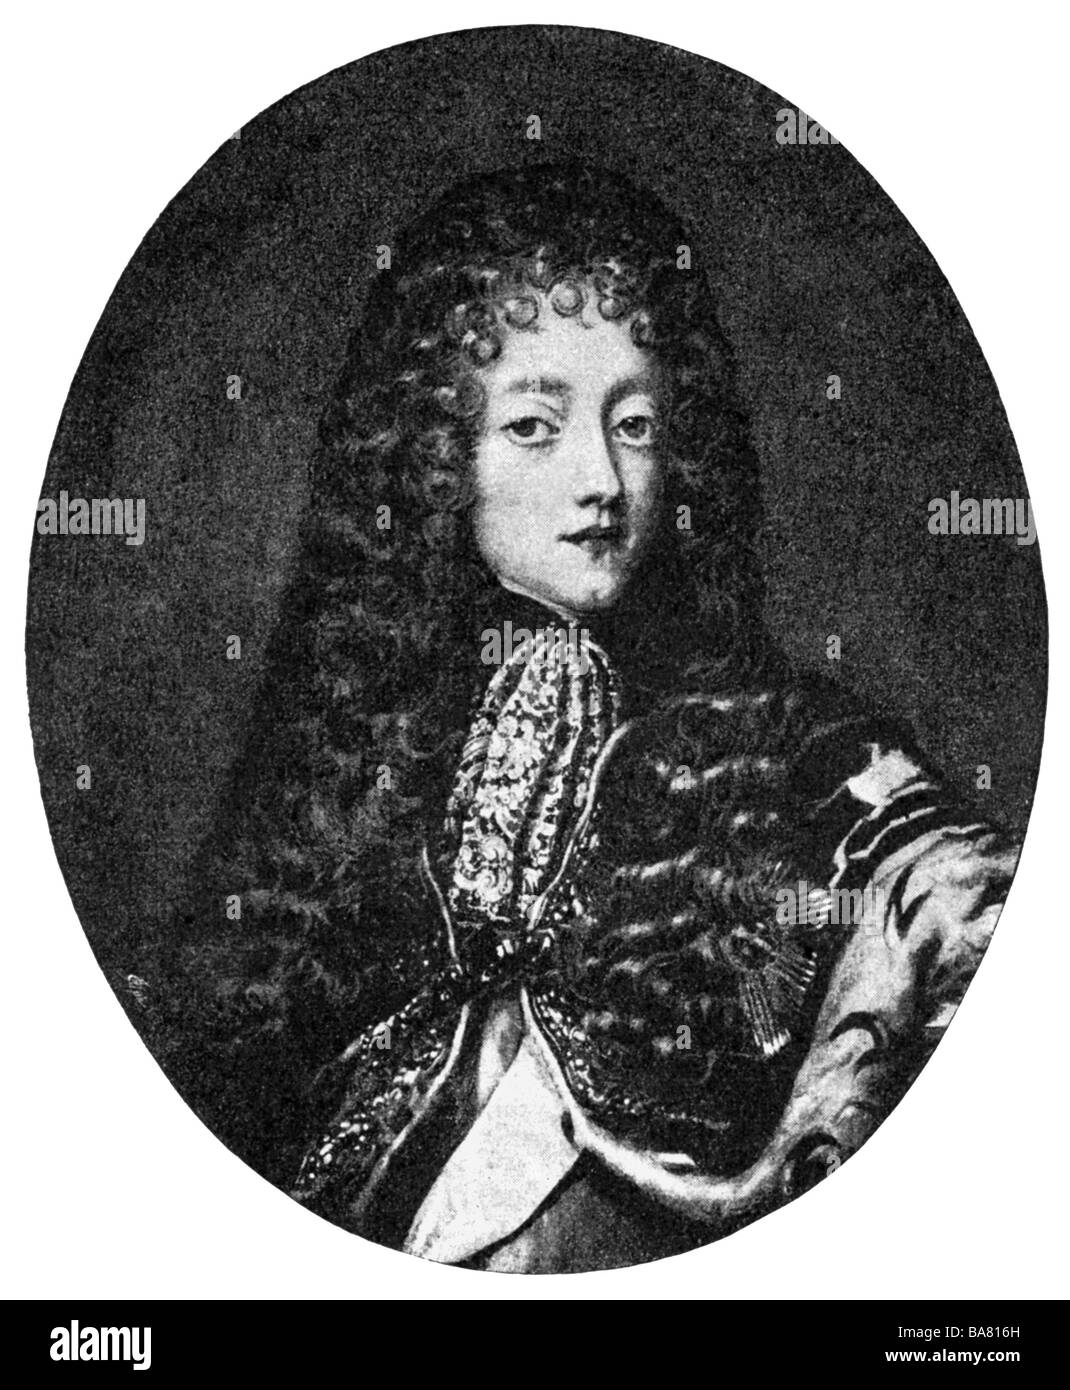 Federico IV re di Danimarca e Norvegia, 1699 - 1730, dopo la stampa di un dipinto contemporaneo da Krafft, tardo XVII secolo, artista del diritto d'autore non deve essere cancellata Foto Stock